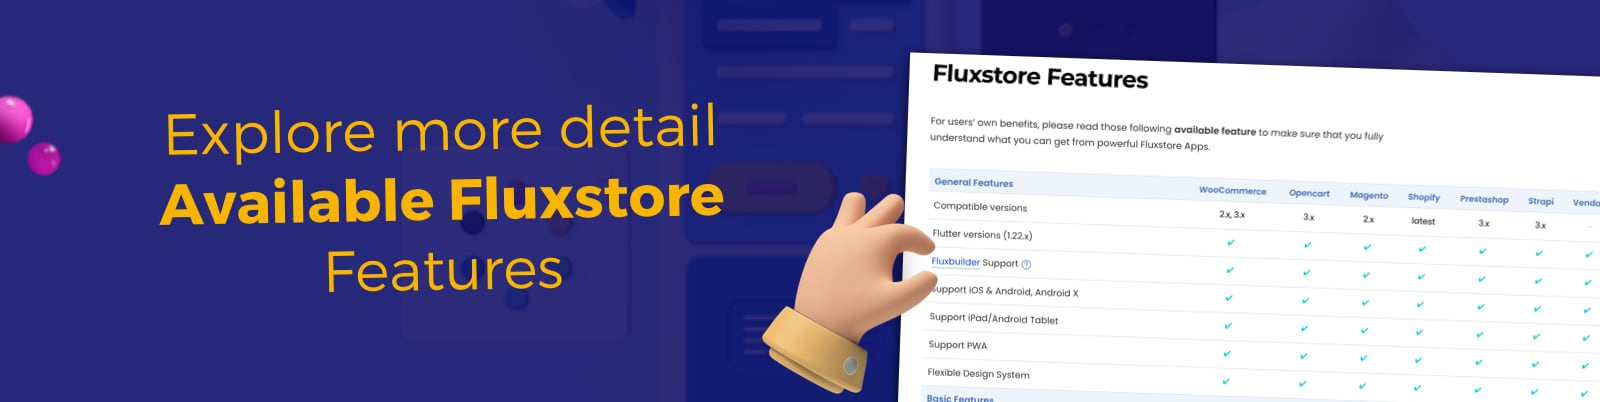 Fluxstore Prestashop - Flutter E-commerce Full App - 11